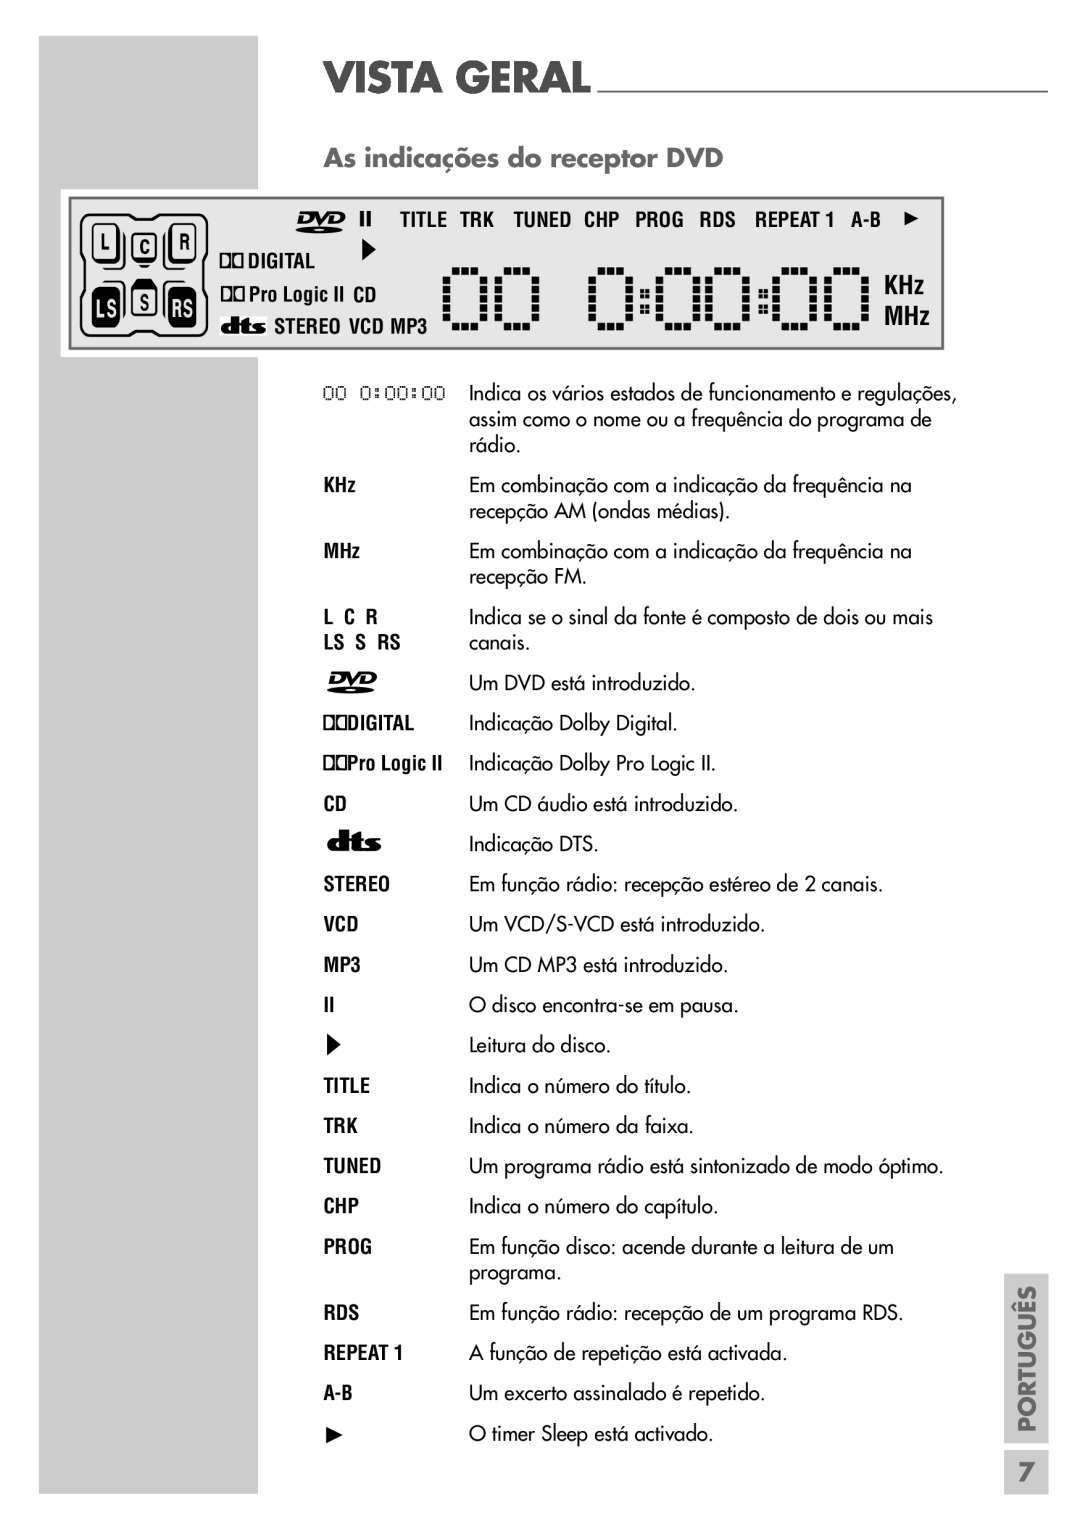 Grundig DR 5400 DD As indicações do receptor DVD, Indica o número do título, Indica o número da faixa, programa, Português 